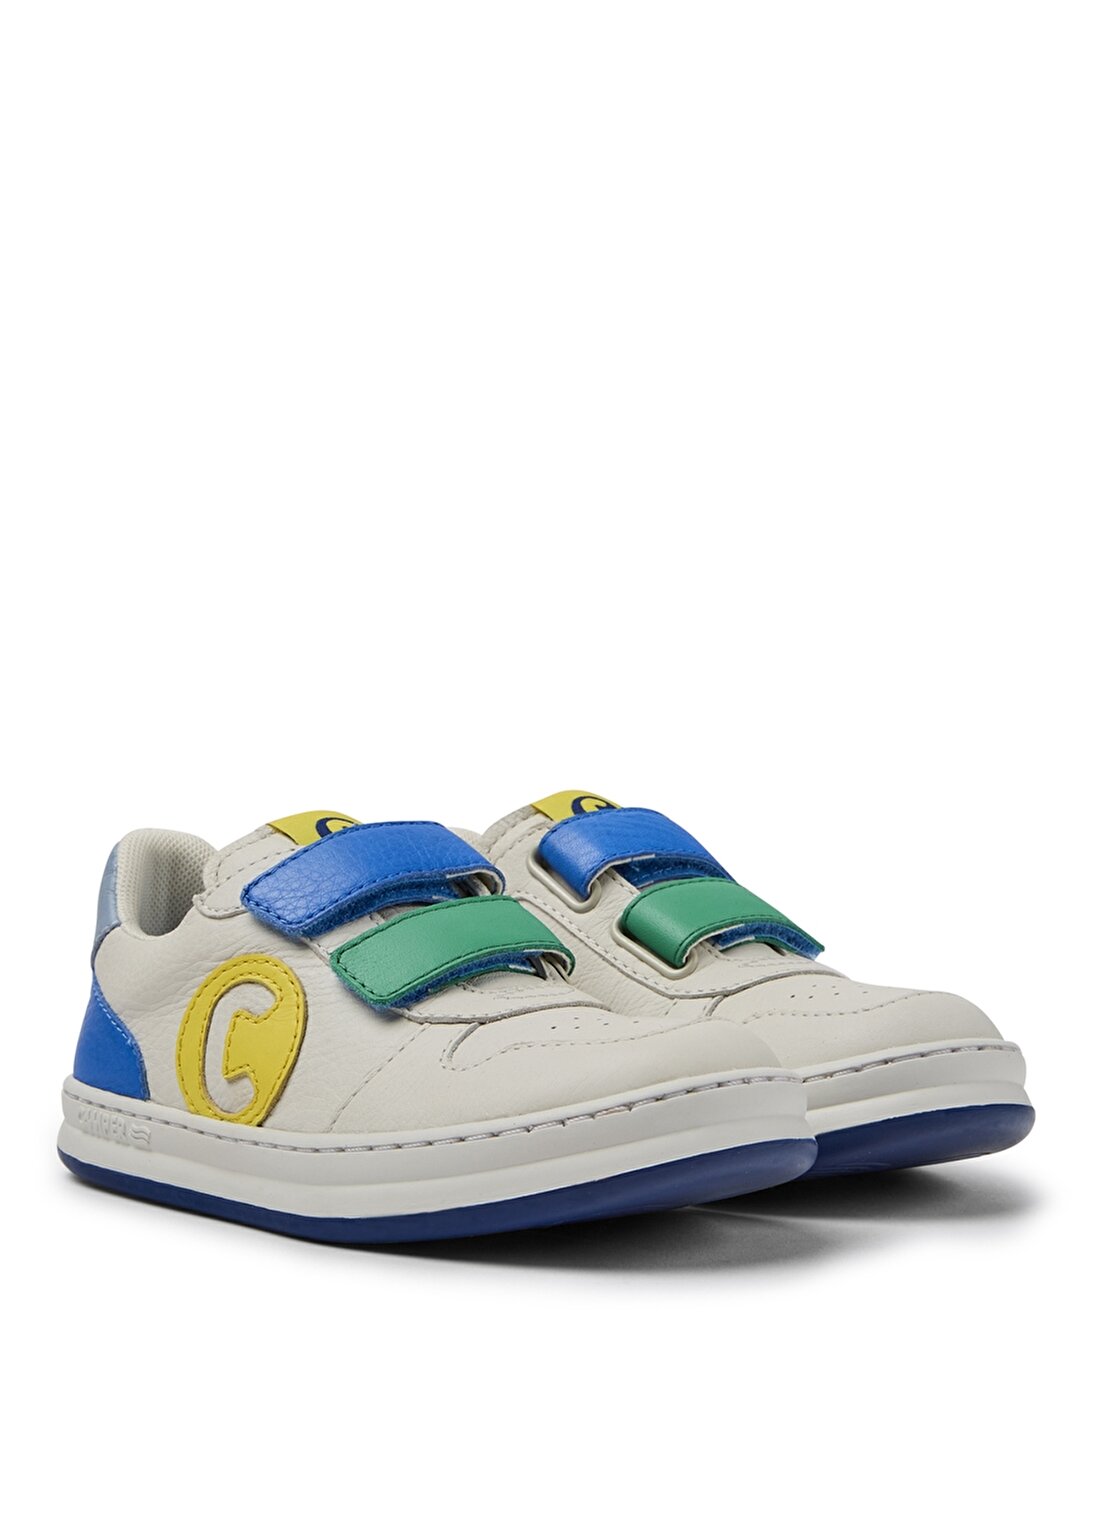 Camper K800436-015 Multi - Assorted Çok Renkli Erkek Çocuk Yürüyüş Ayakkabısı